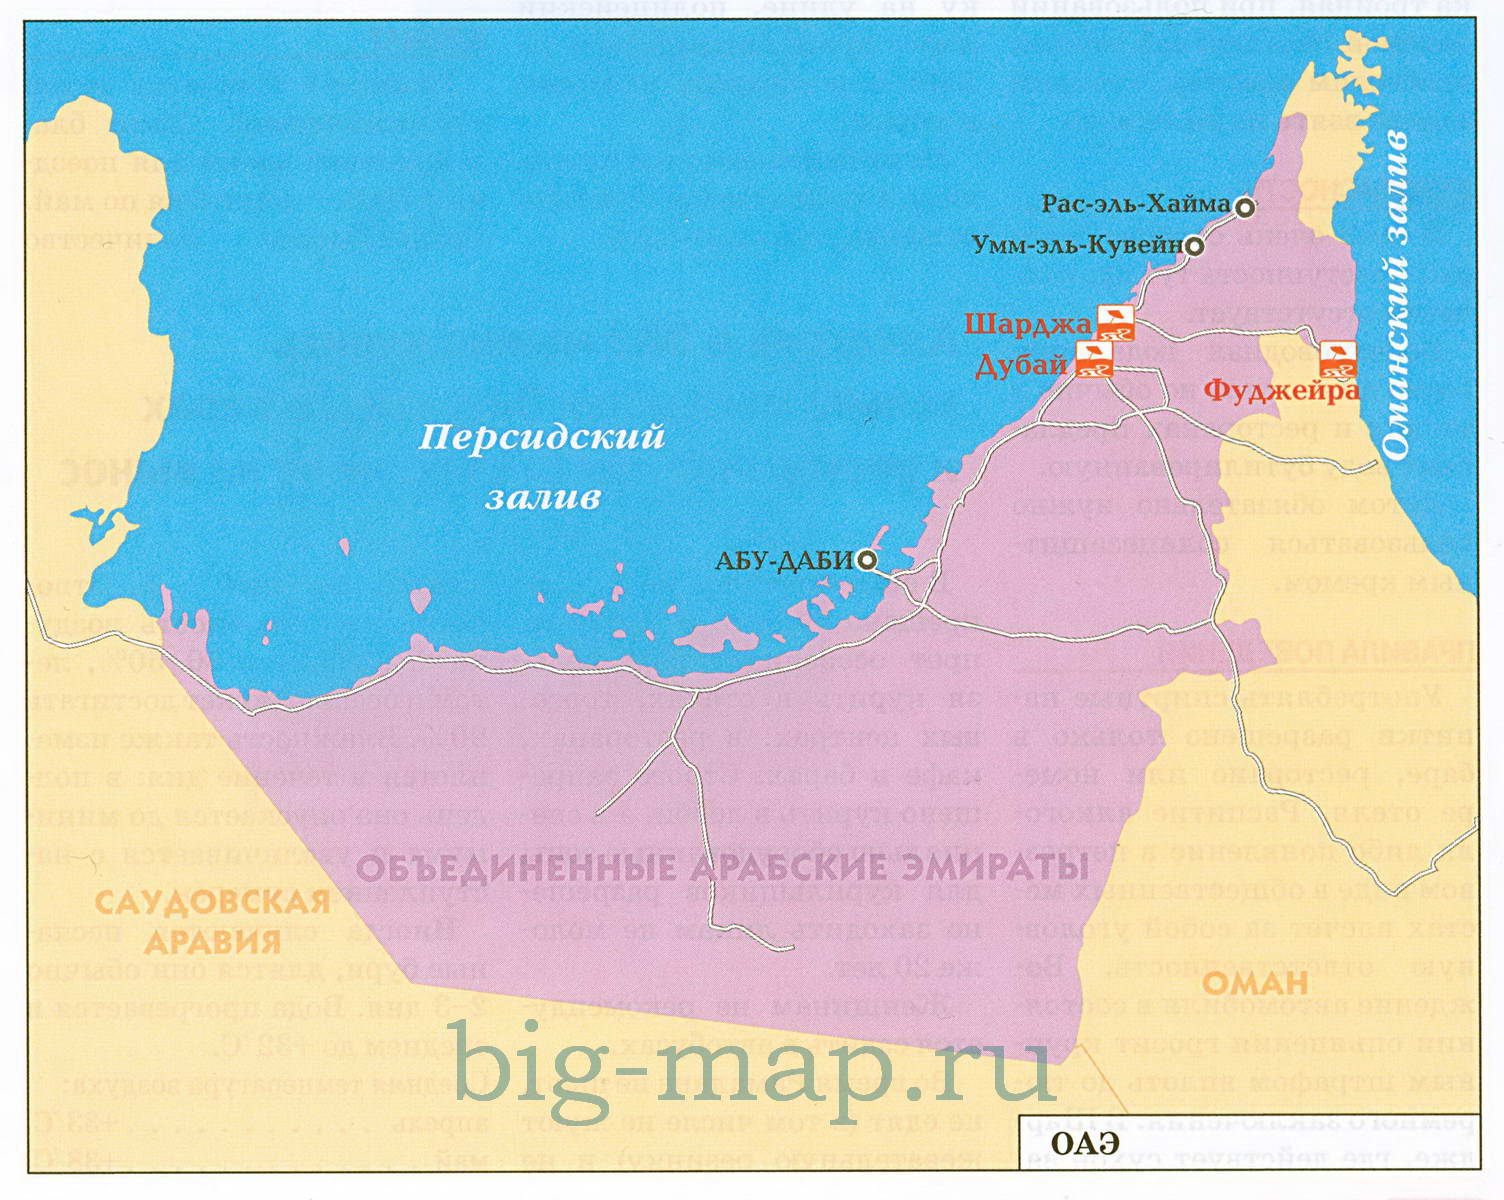 Аль хайма дубай расстояние. Карта ОАЭ С Эмиратами. Карта ОАЭ С курортами. Объединённые арабские эмираты туристическая карта.